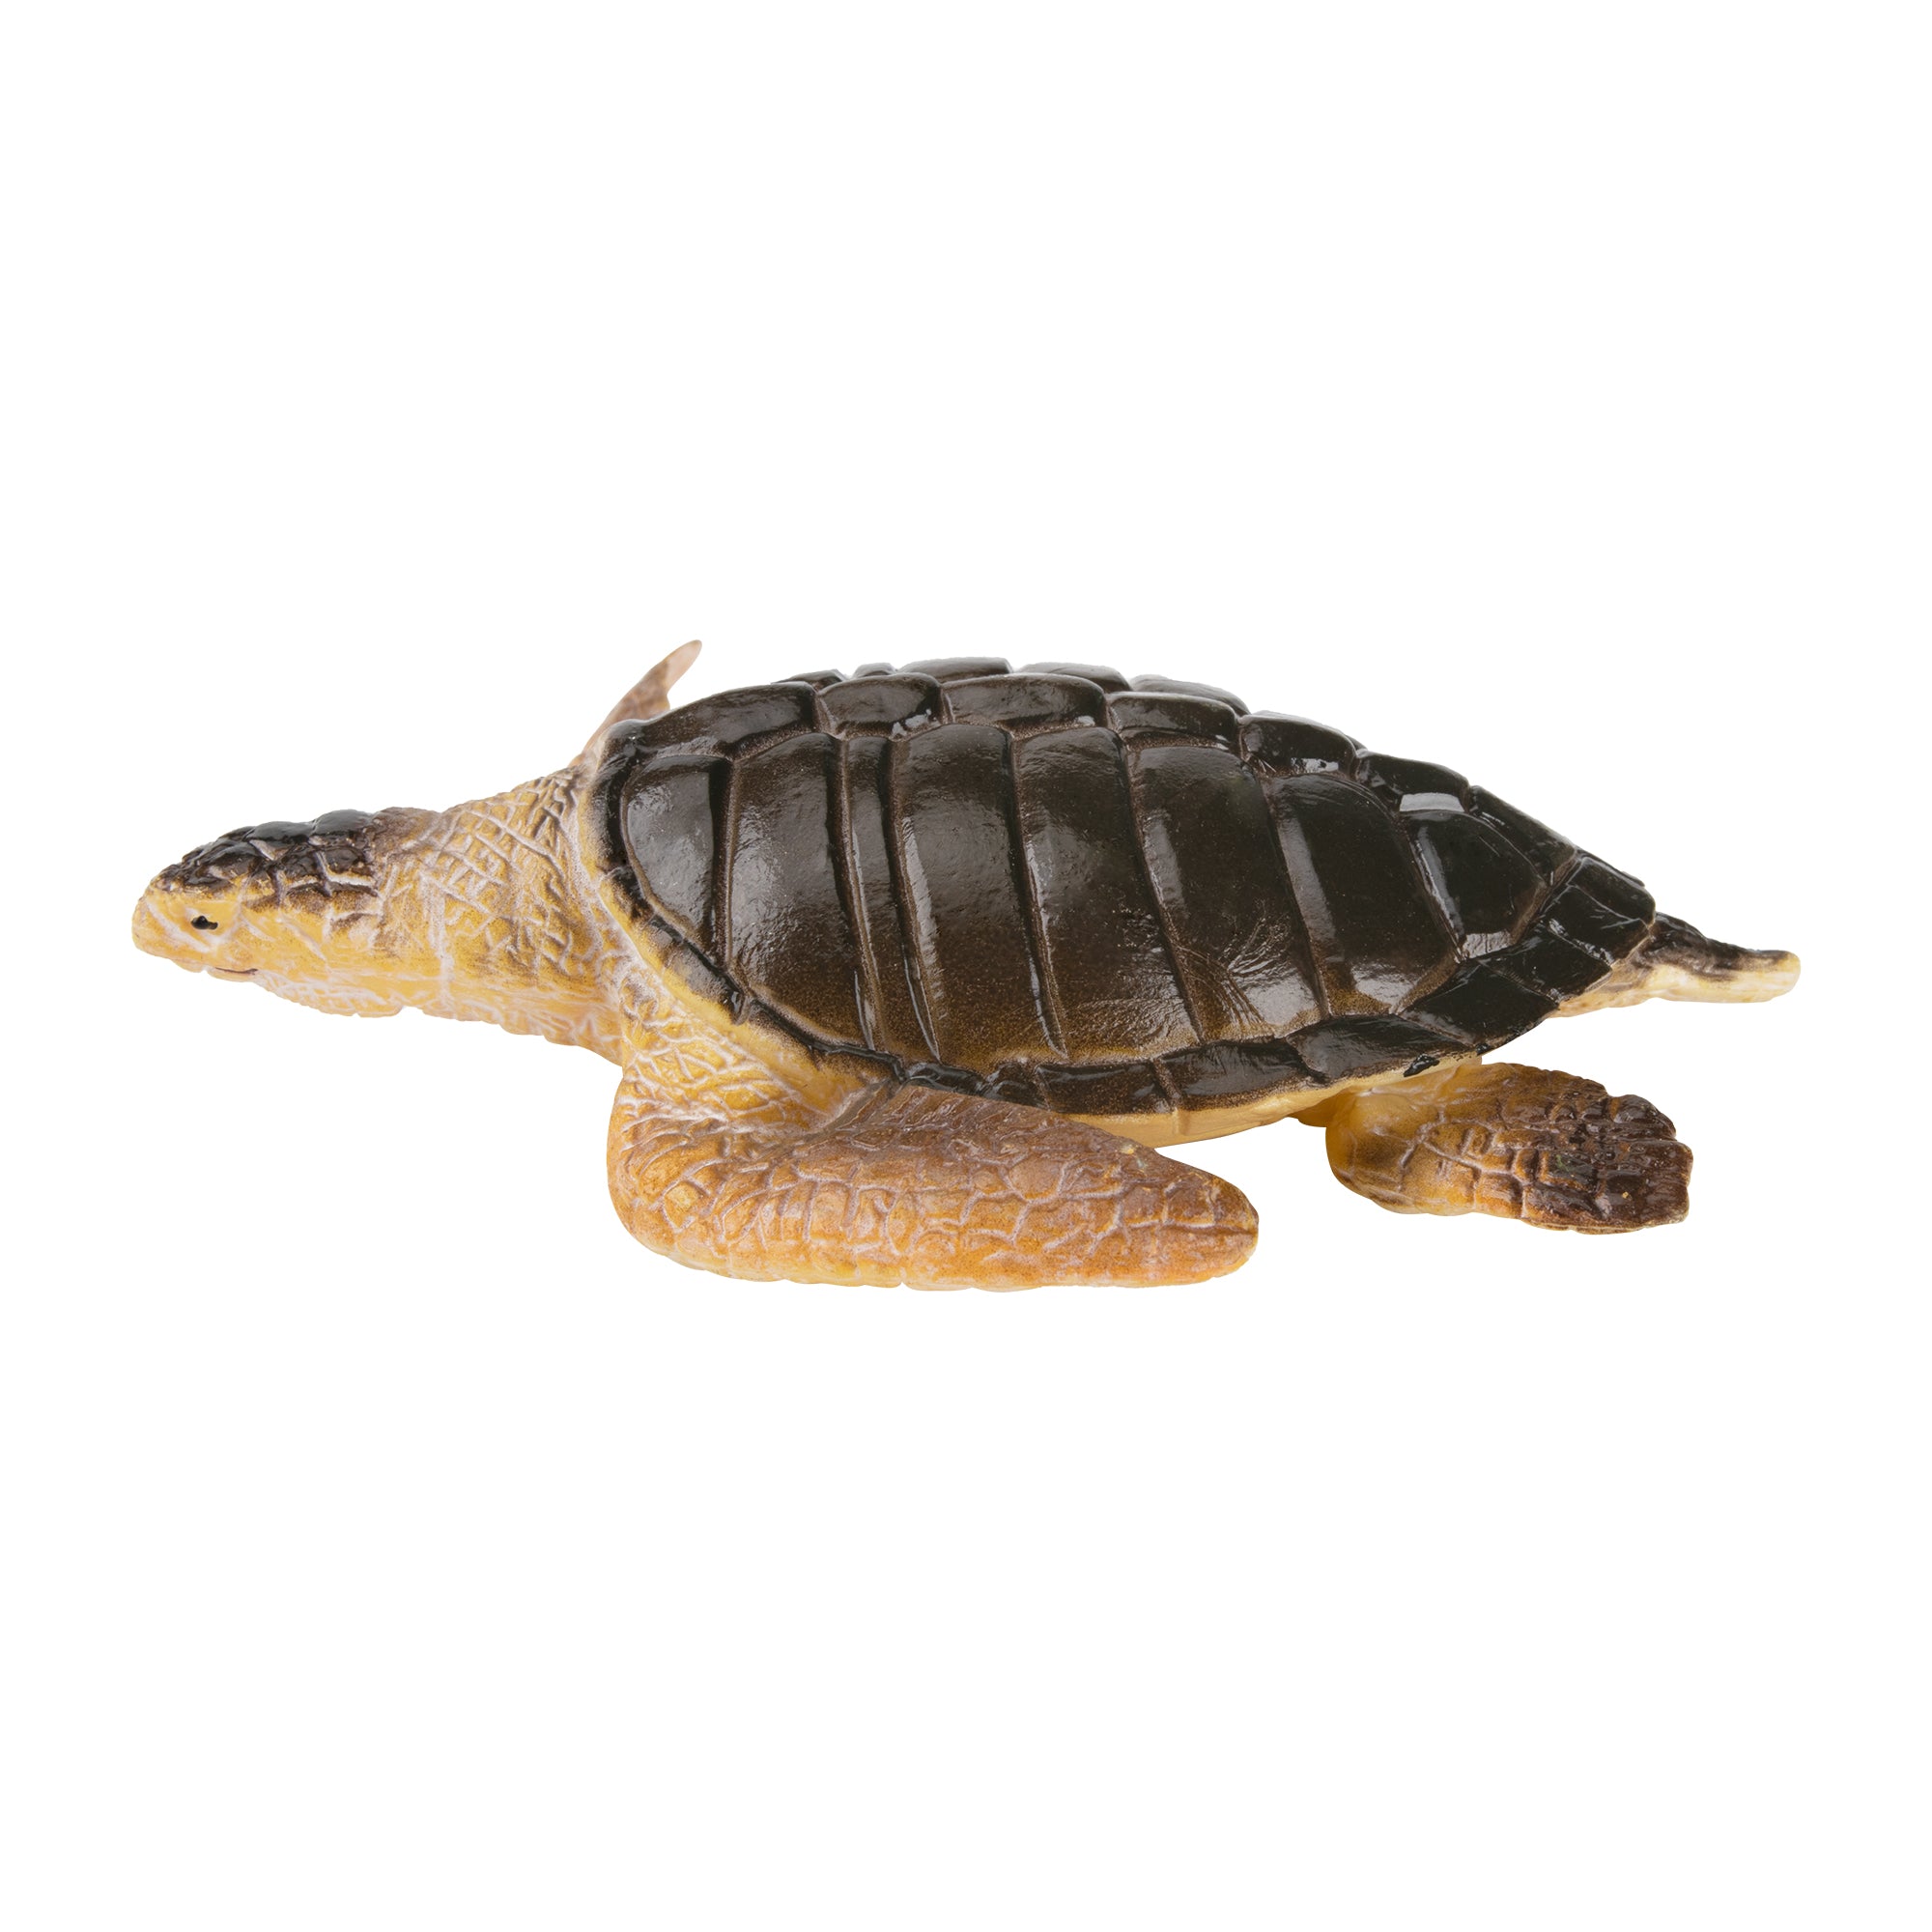 Toymany Kemp's Ridley Sea Turtle Figurine Toy